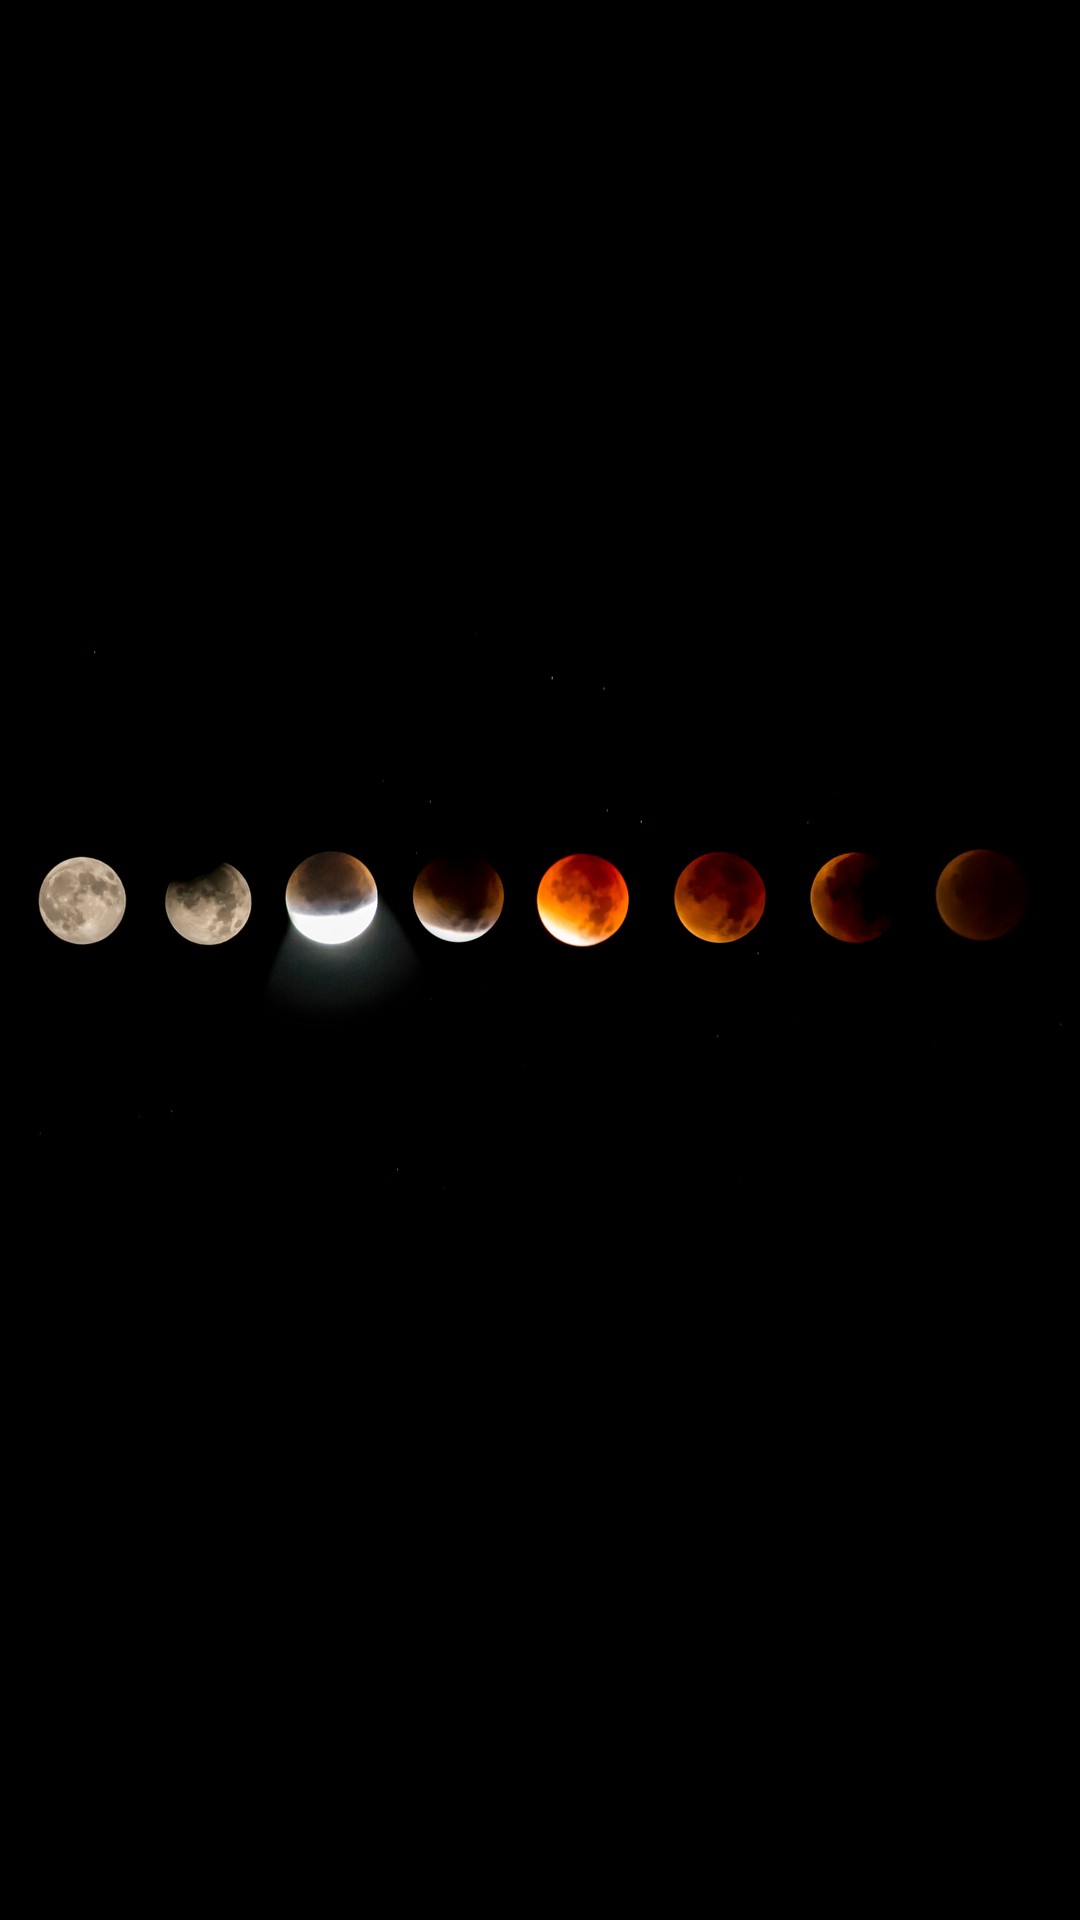 Blood Moon Lunar Eclipse iPhone Wallpaper 3d